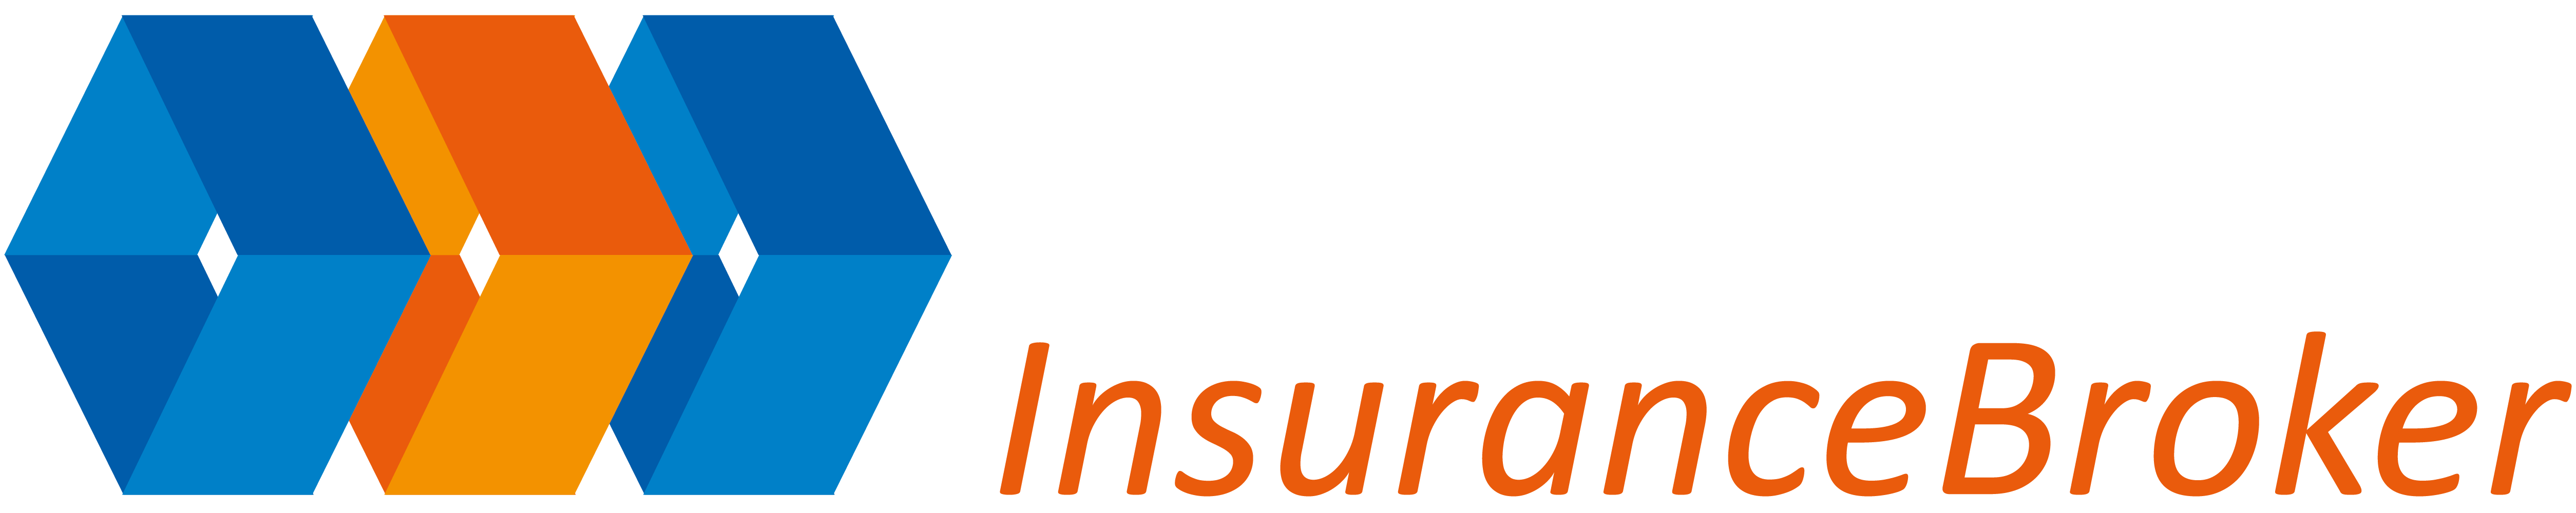 A.I.B. – Insurance Broker